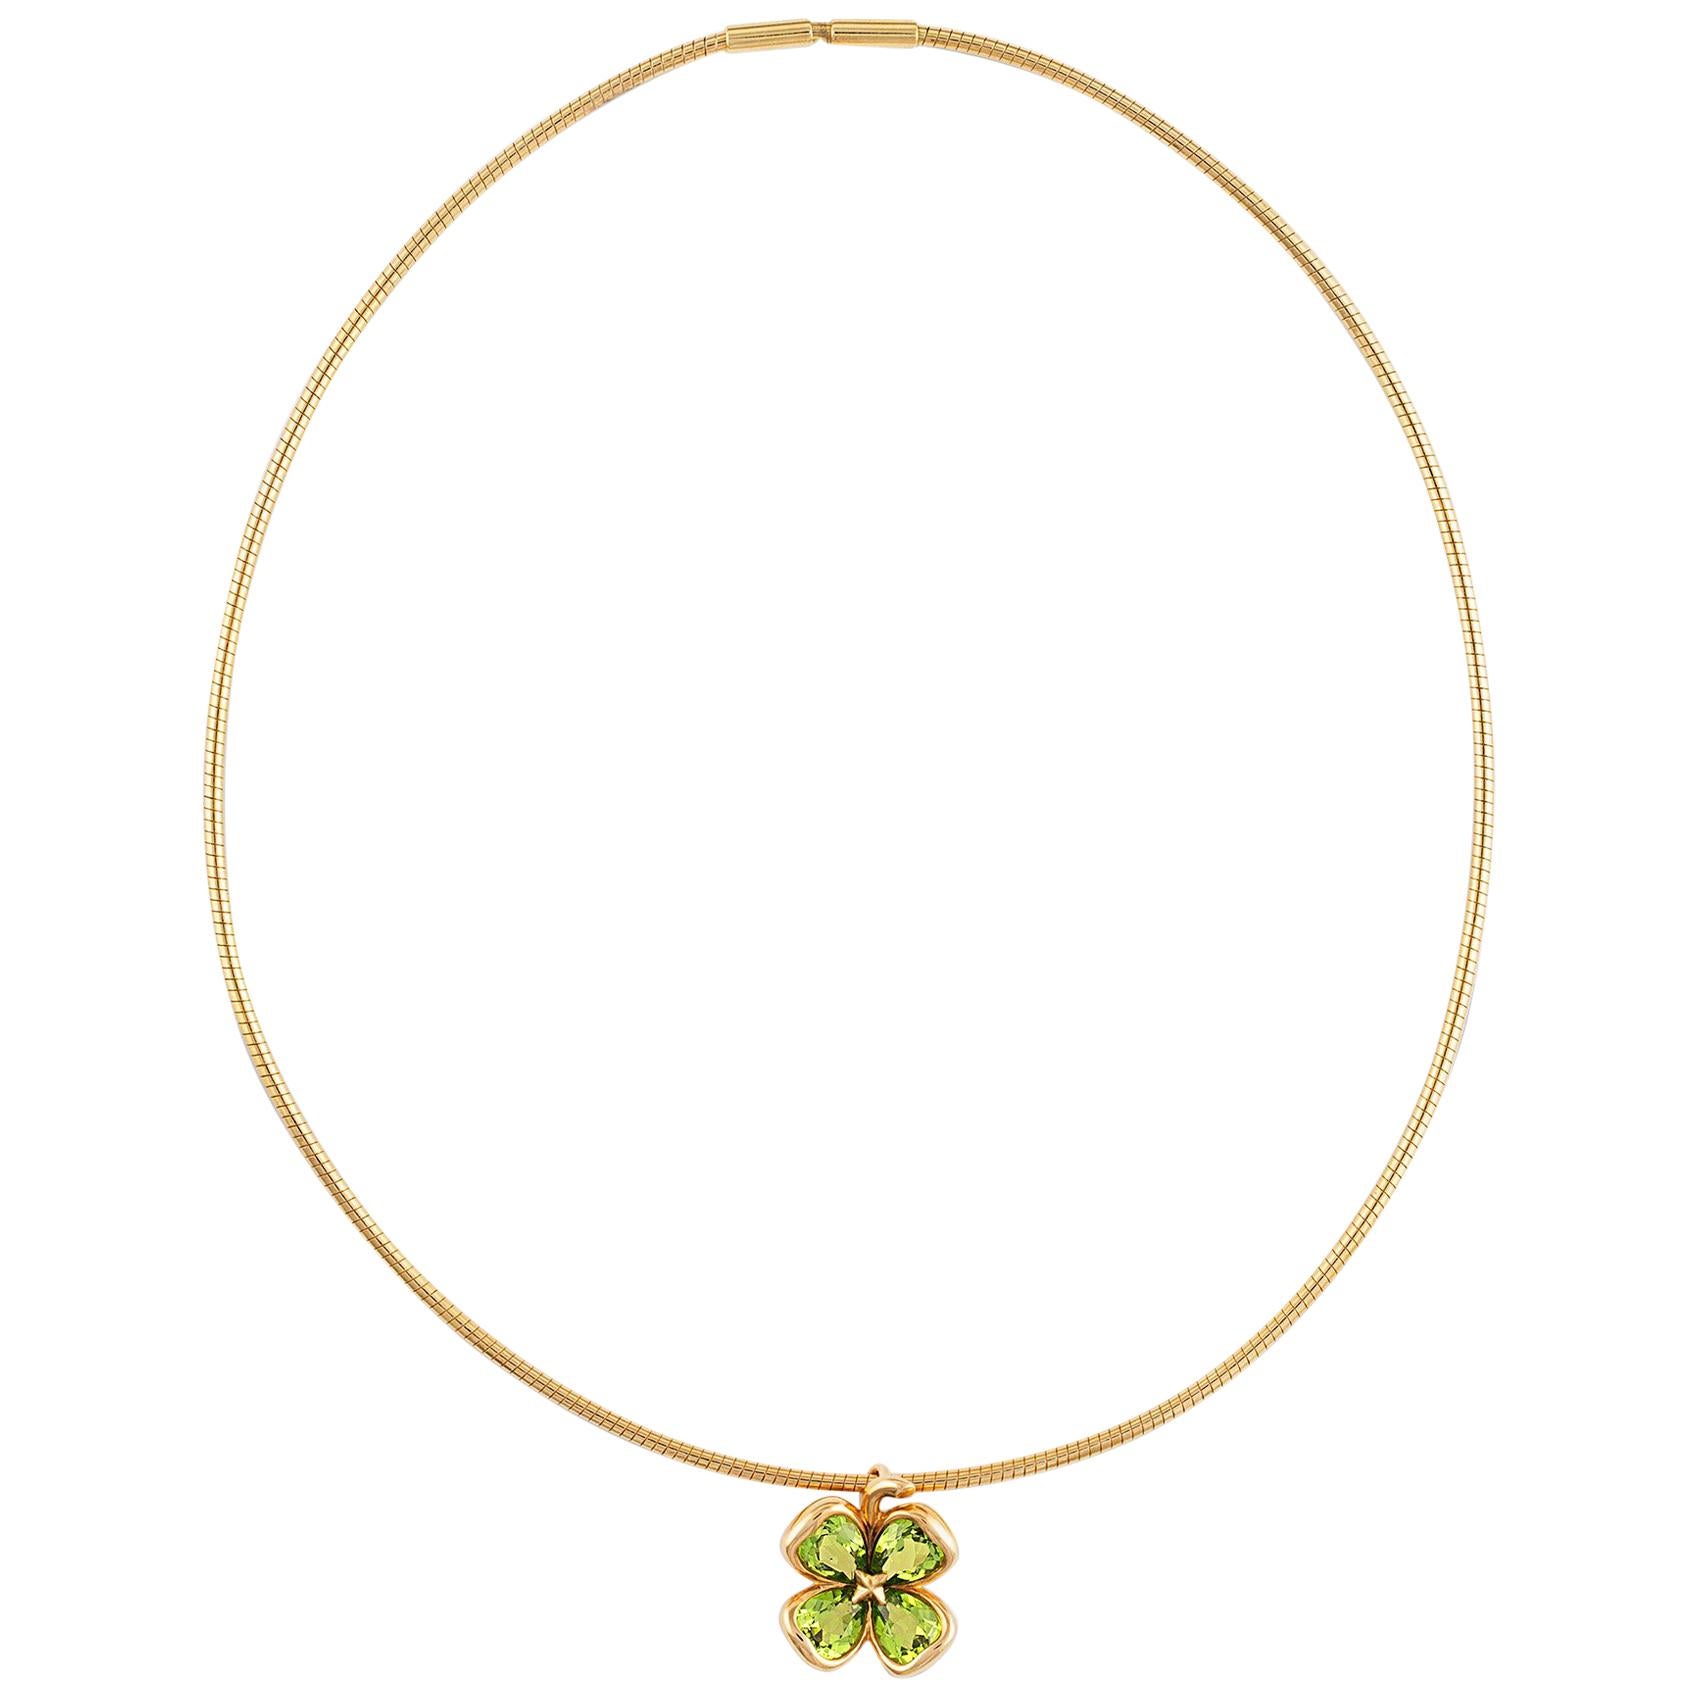 Chanel 18 Karat Yellow Gold Peridot Necklace